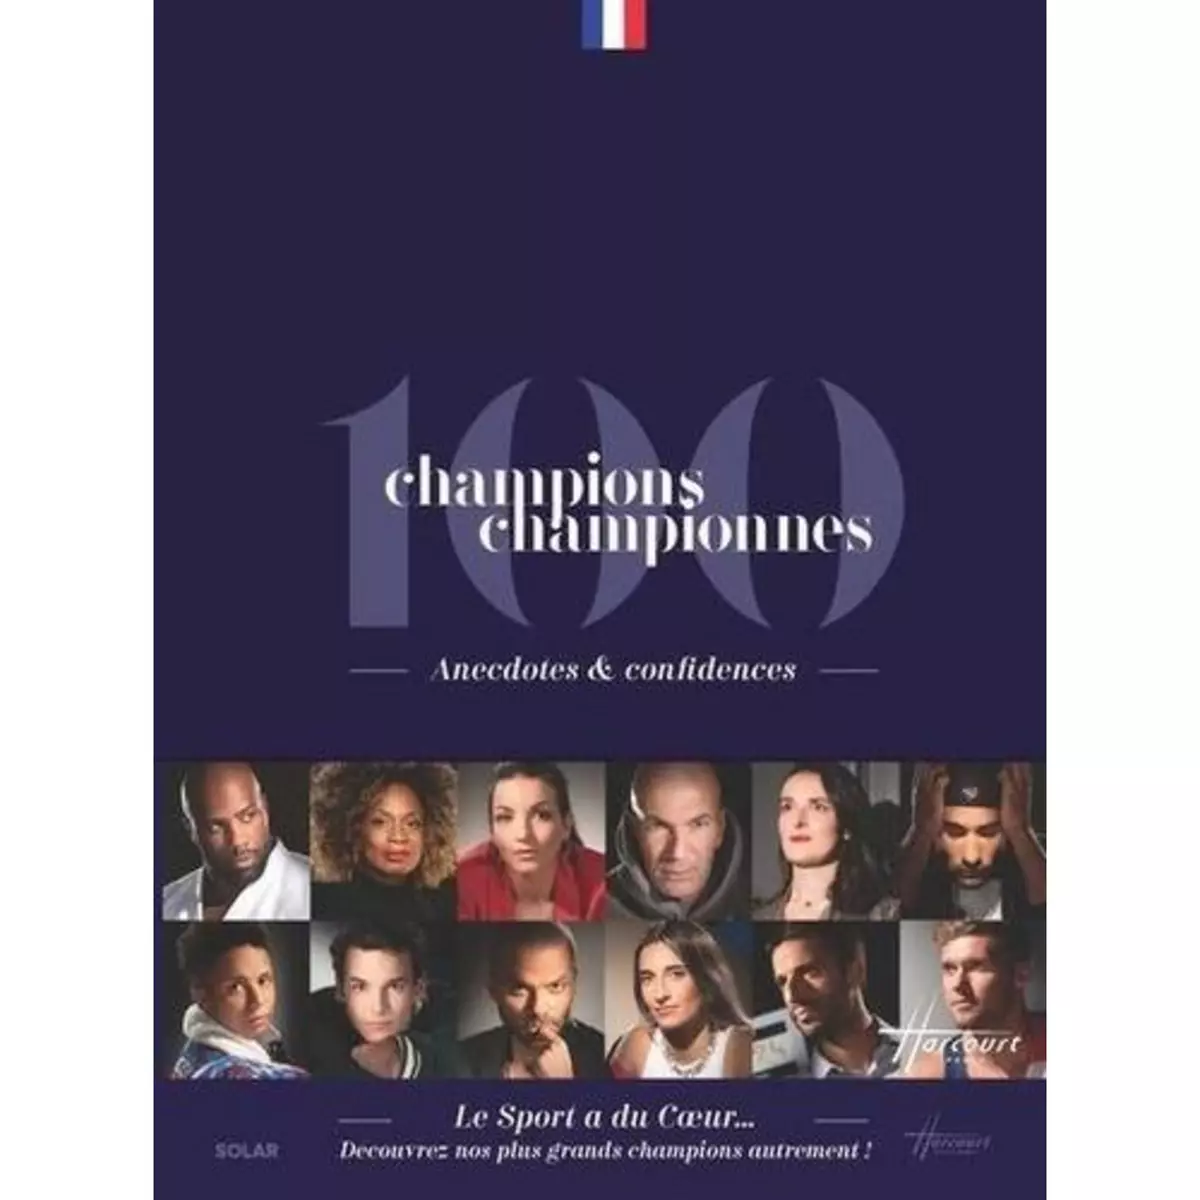  100 CHAMPIONS, CHAMPIONNES. ANECDOTES & CONFIDENCES, Le Sport a du coeur